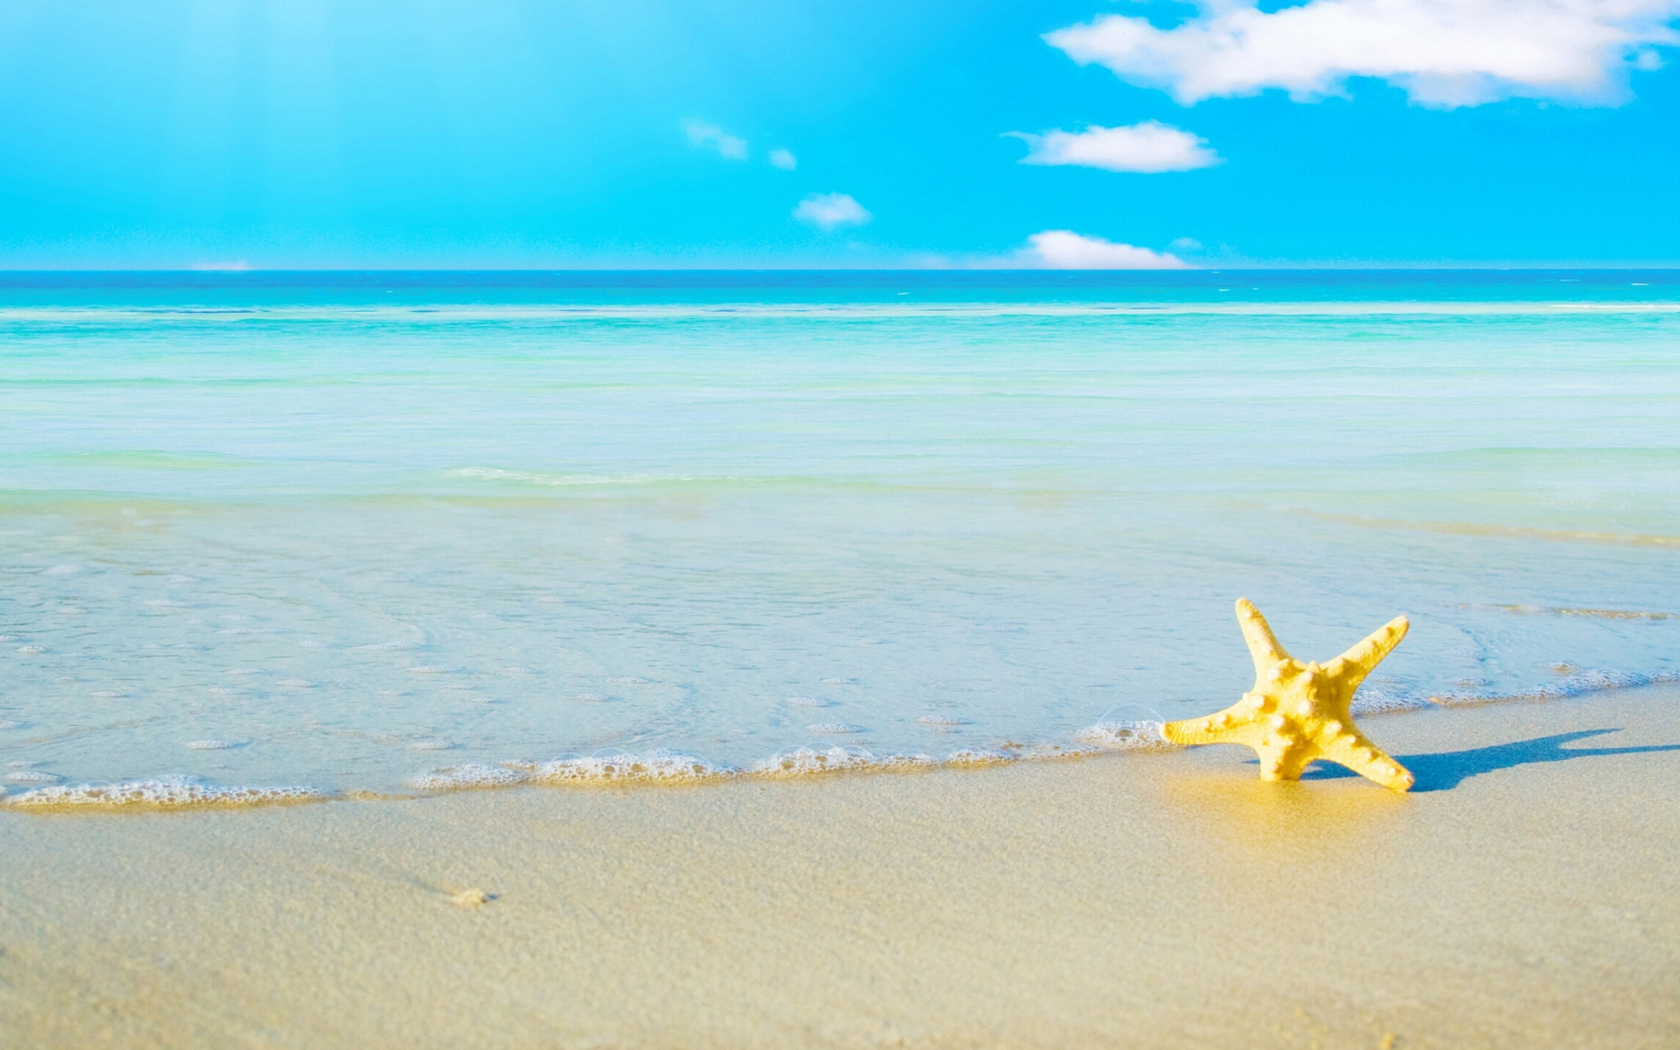 Обои Starfish at summer beach 1680x1050